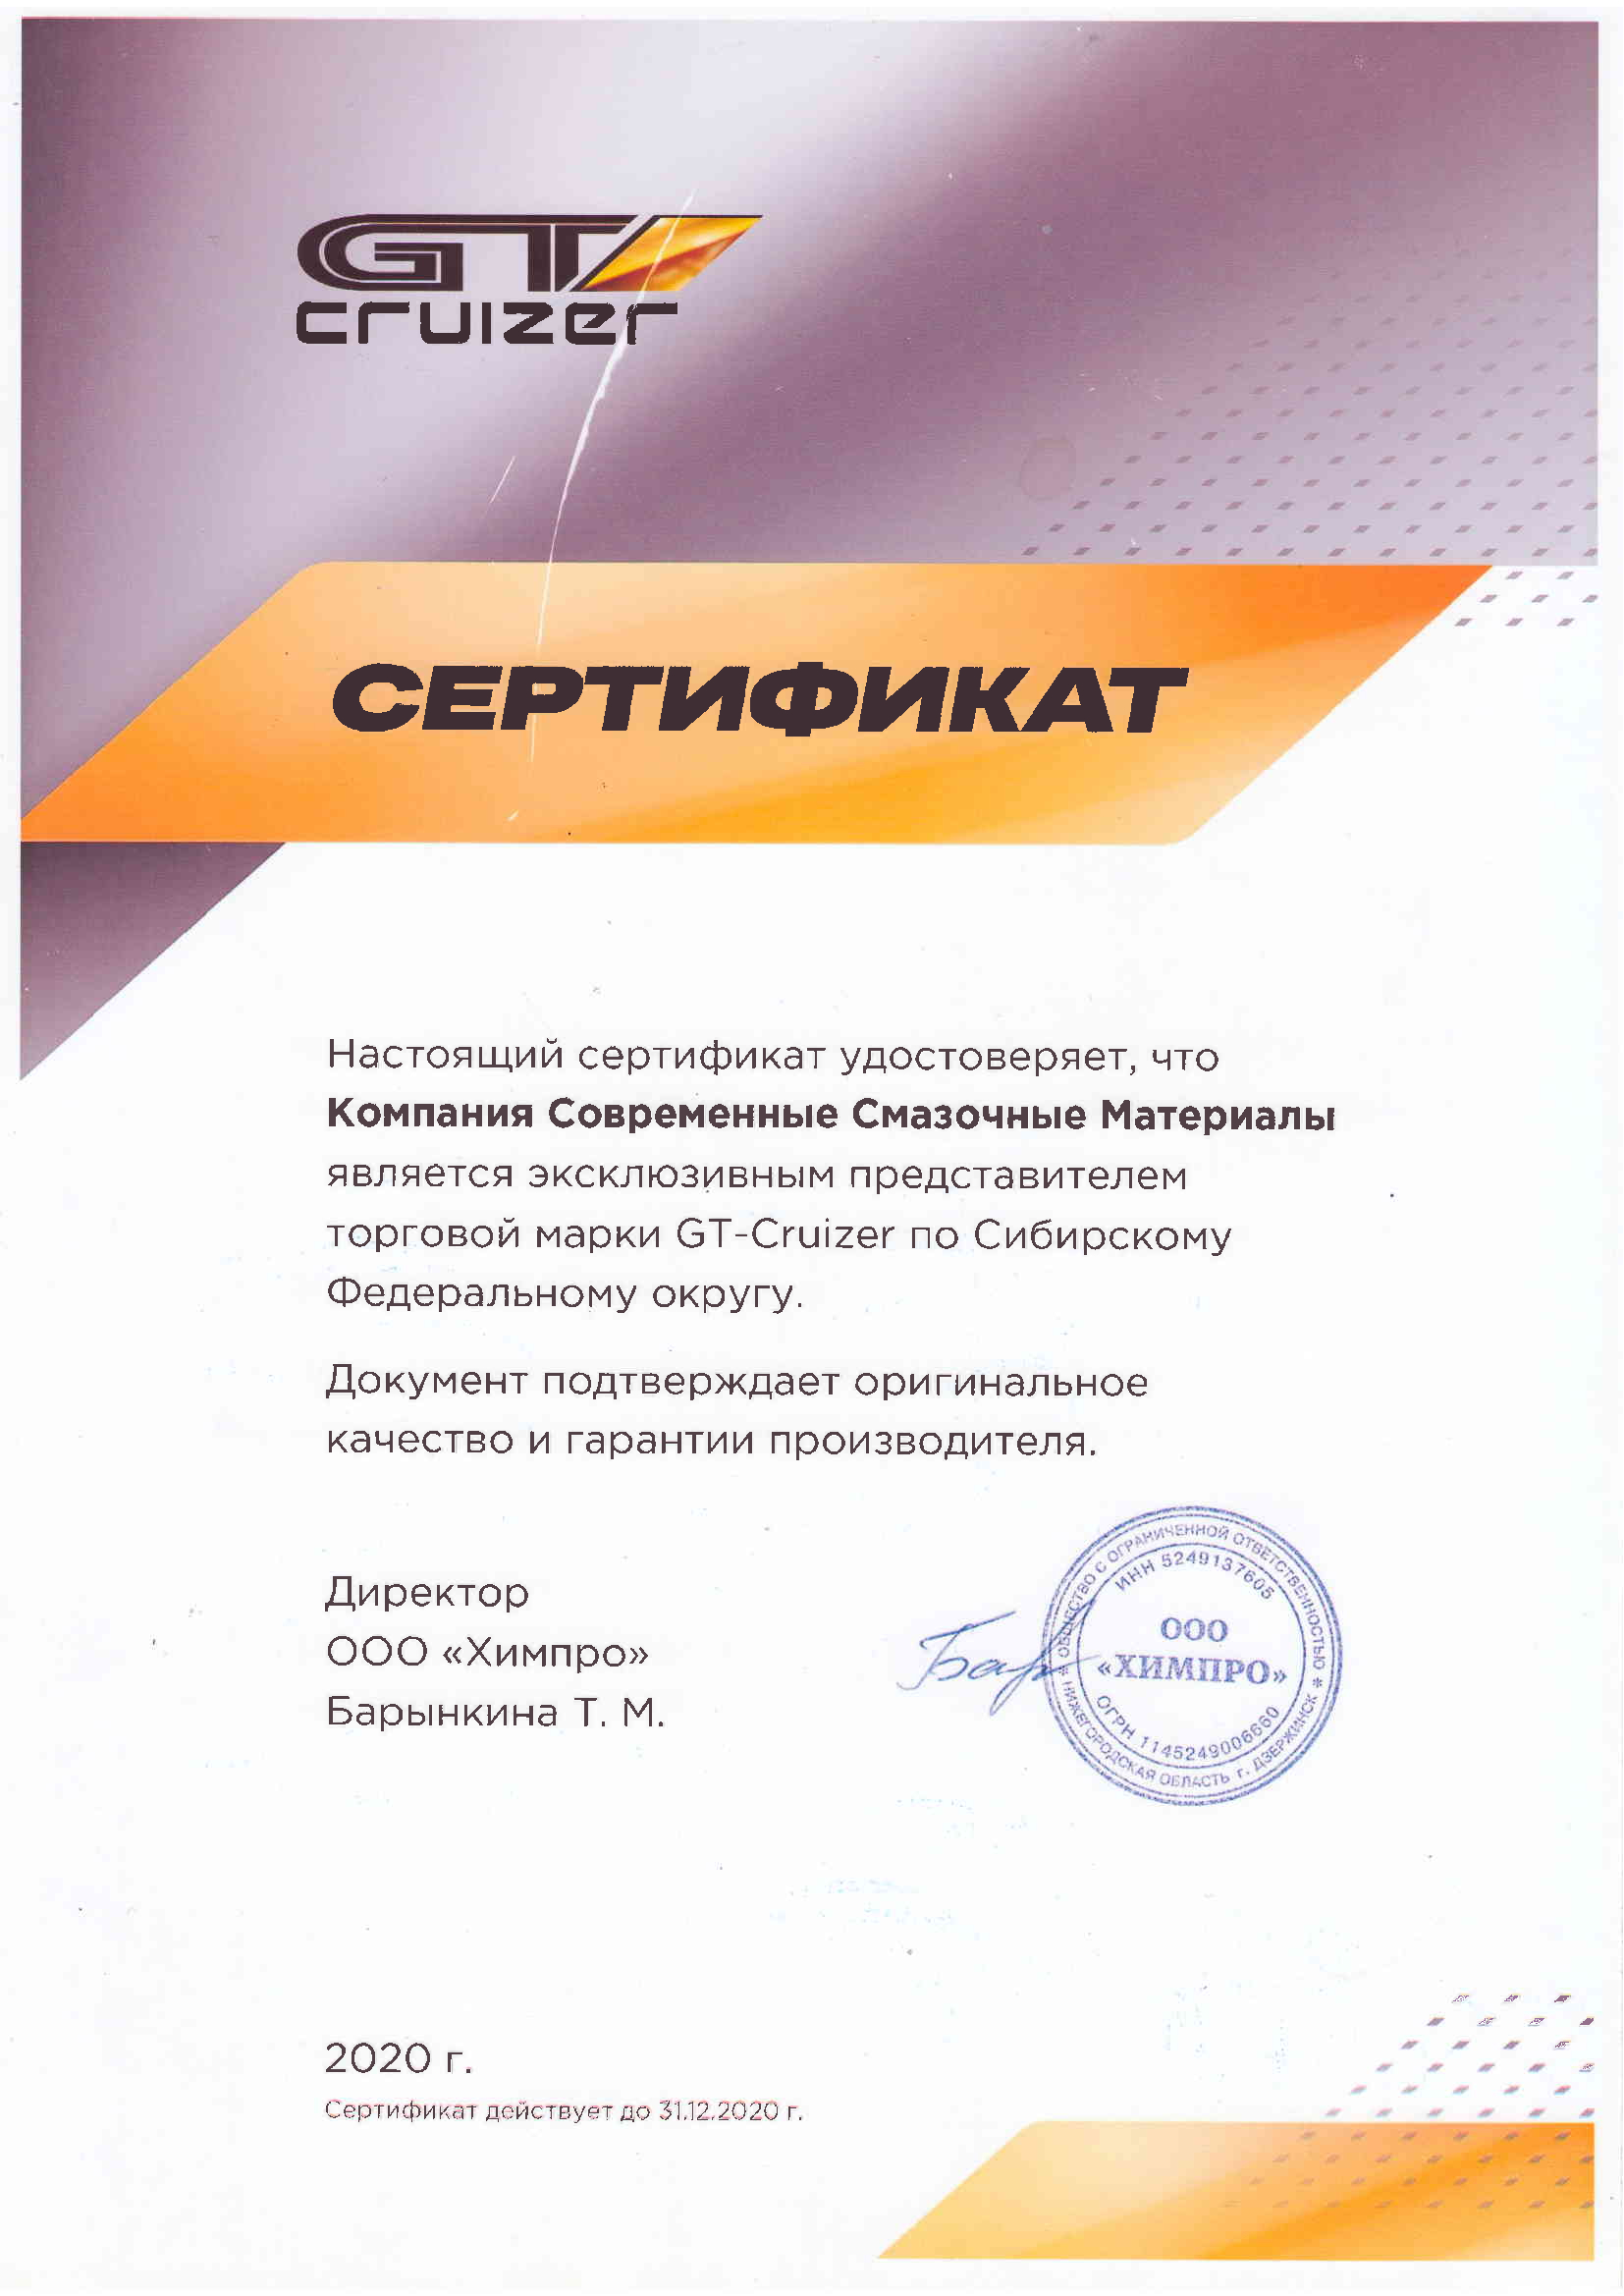 Сертификат Крузер